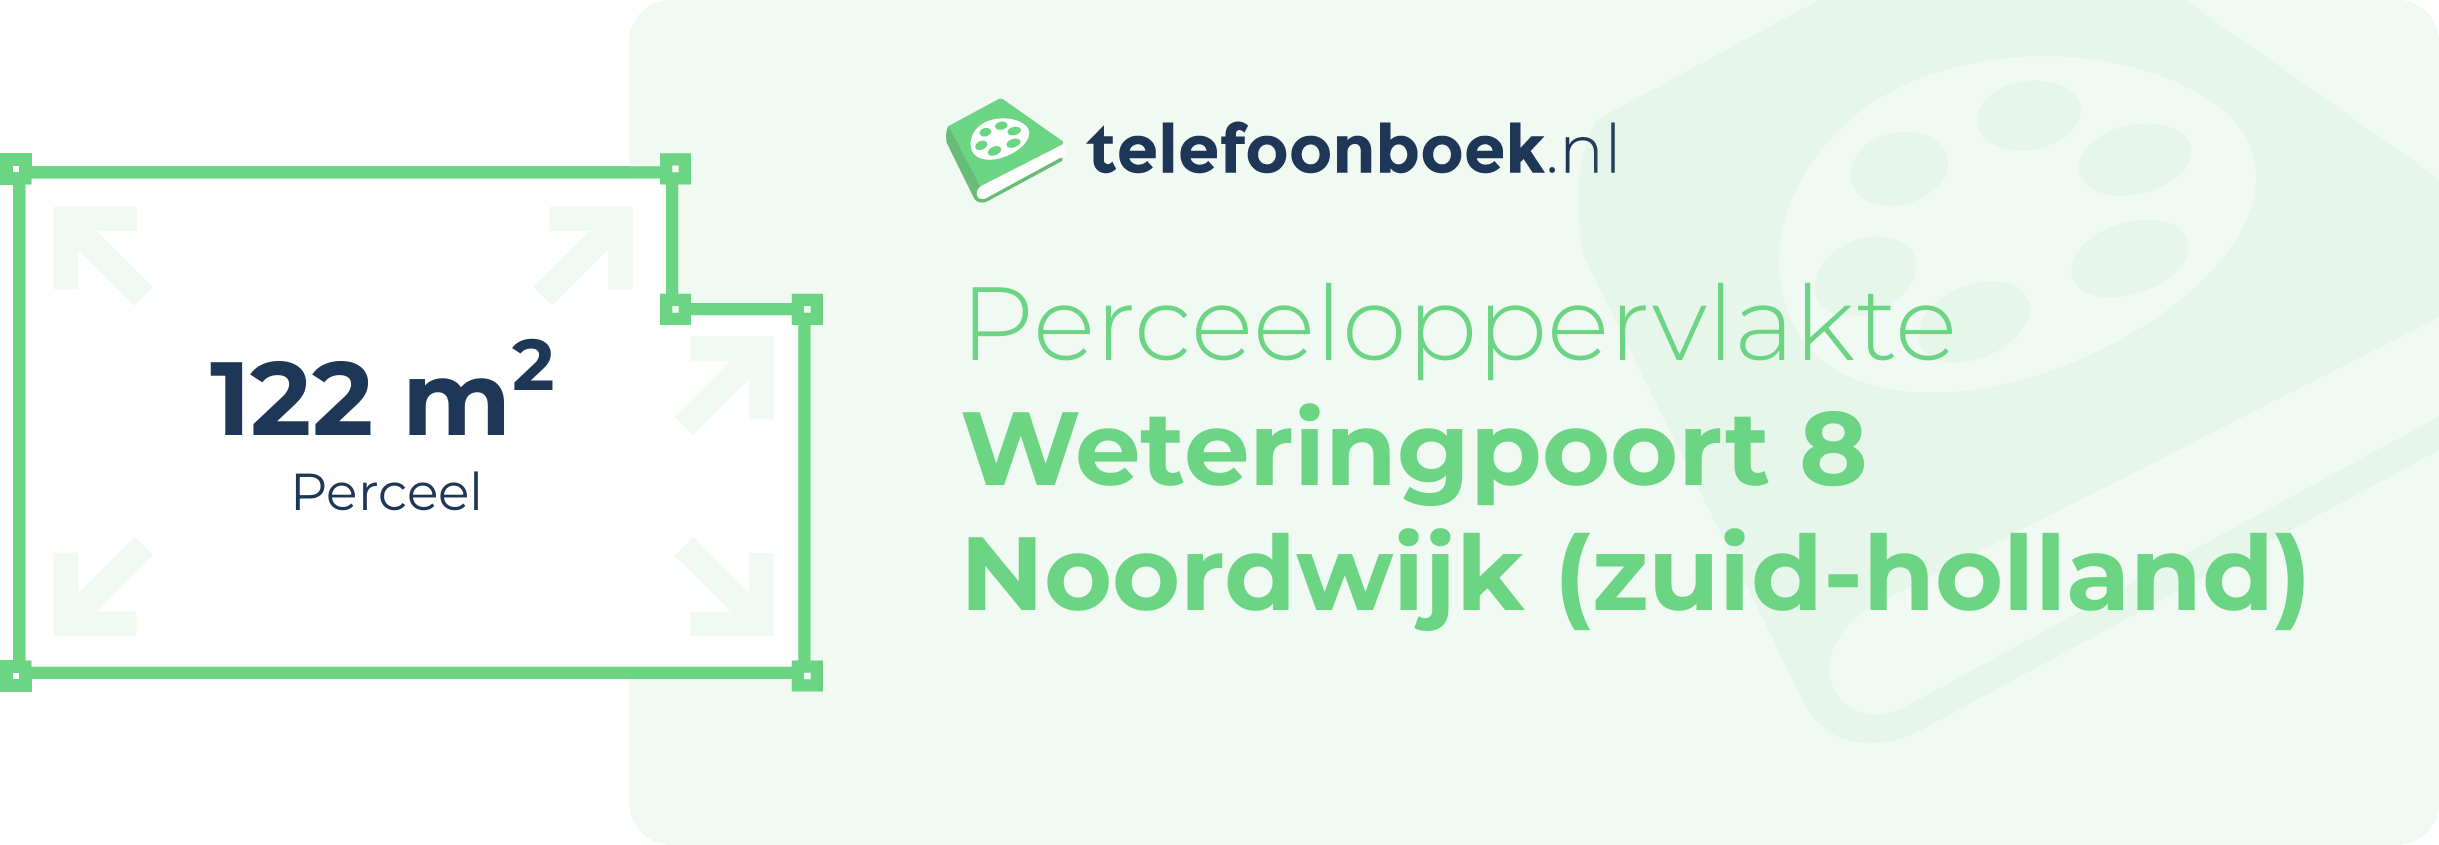 Perceeloppervlakte Weteringpoort 8 Noordwijk (Zuid-Holland)